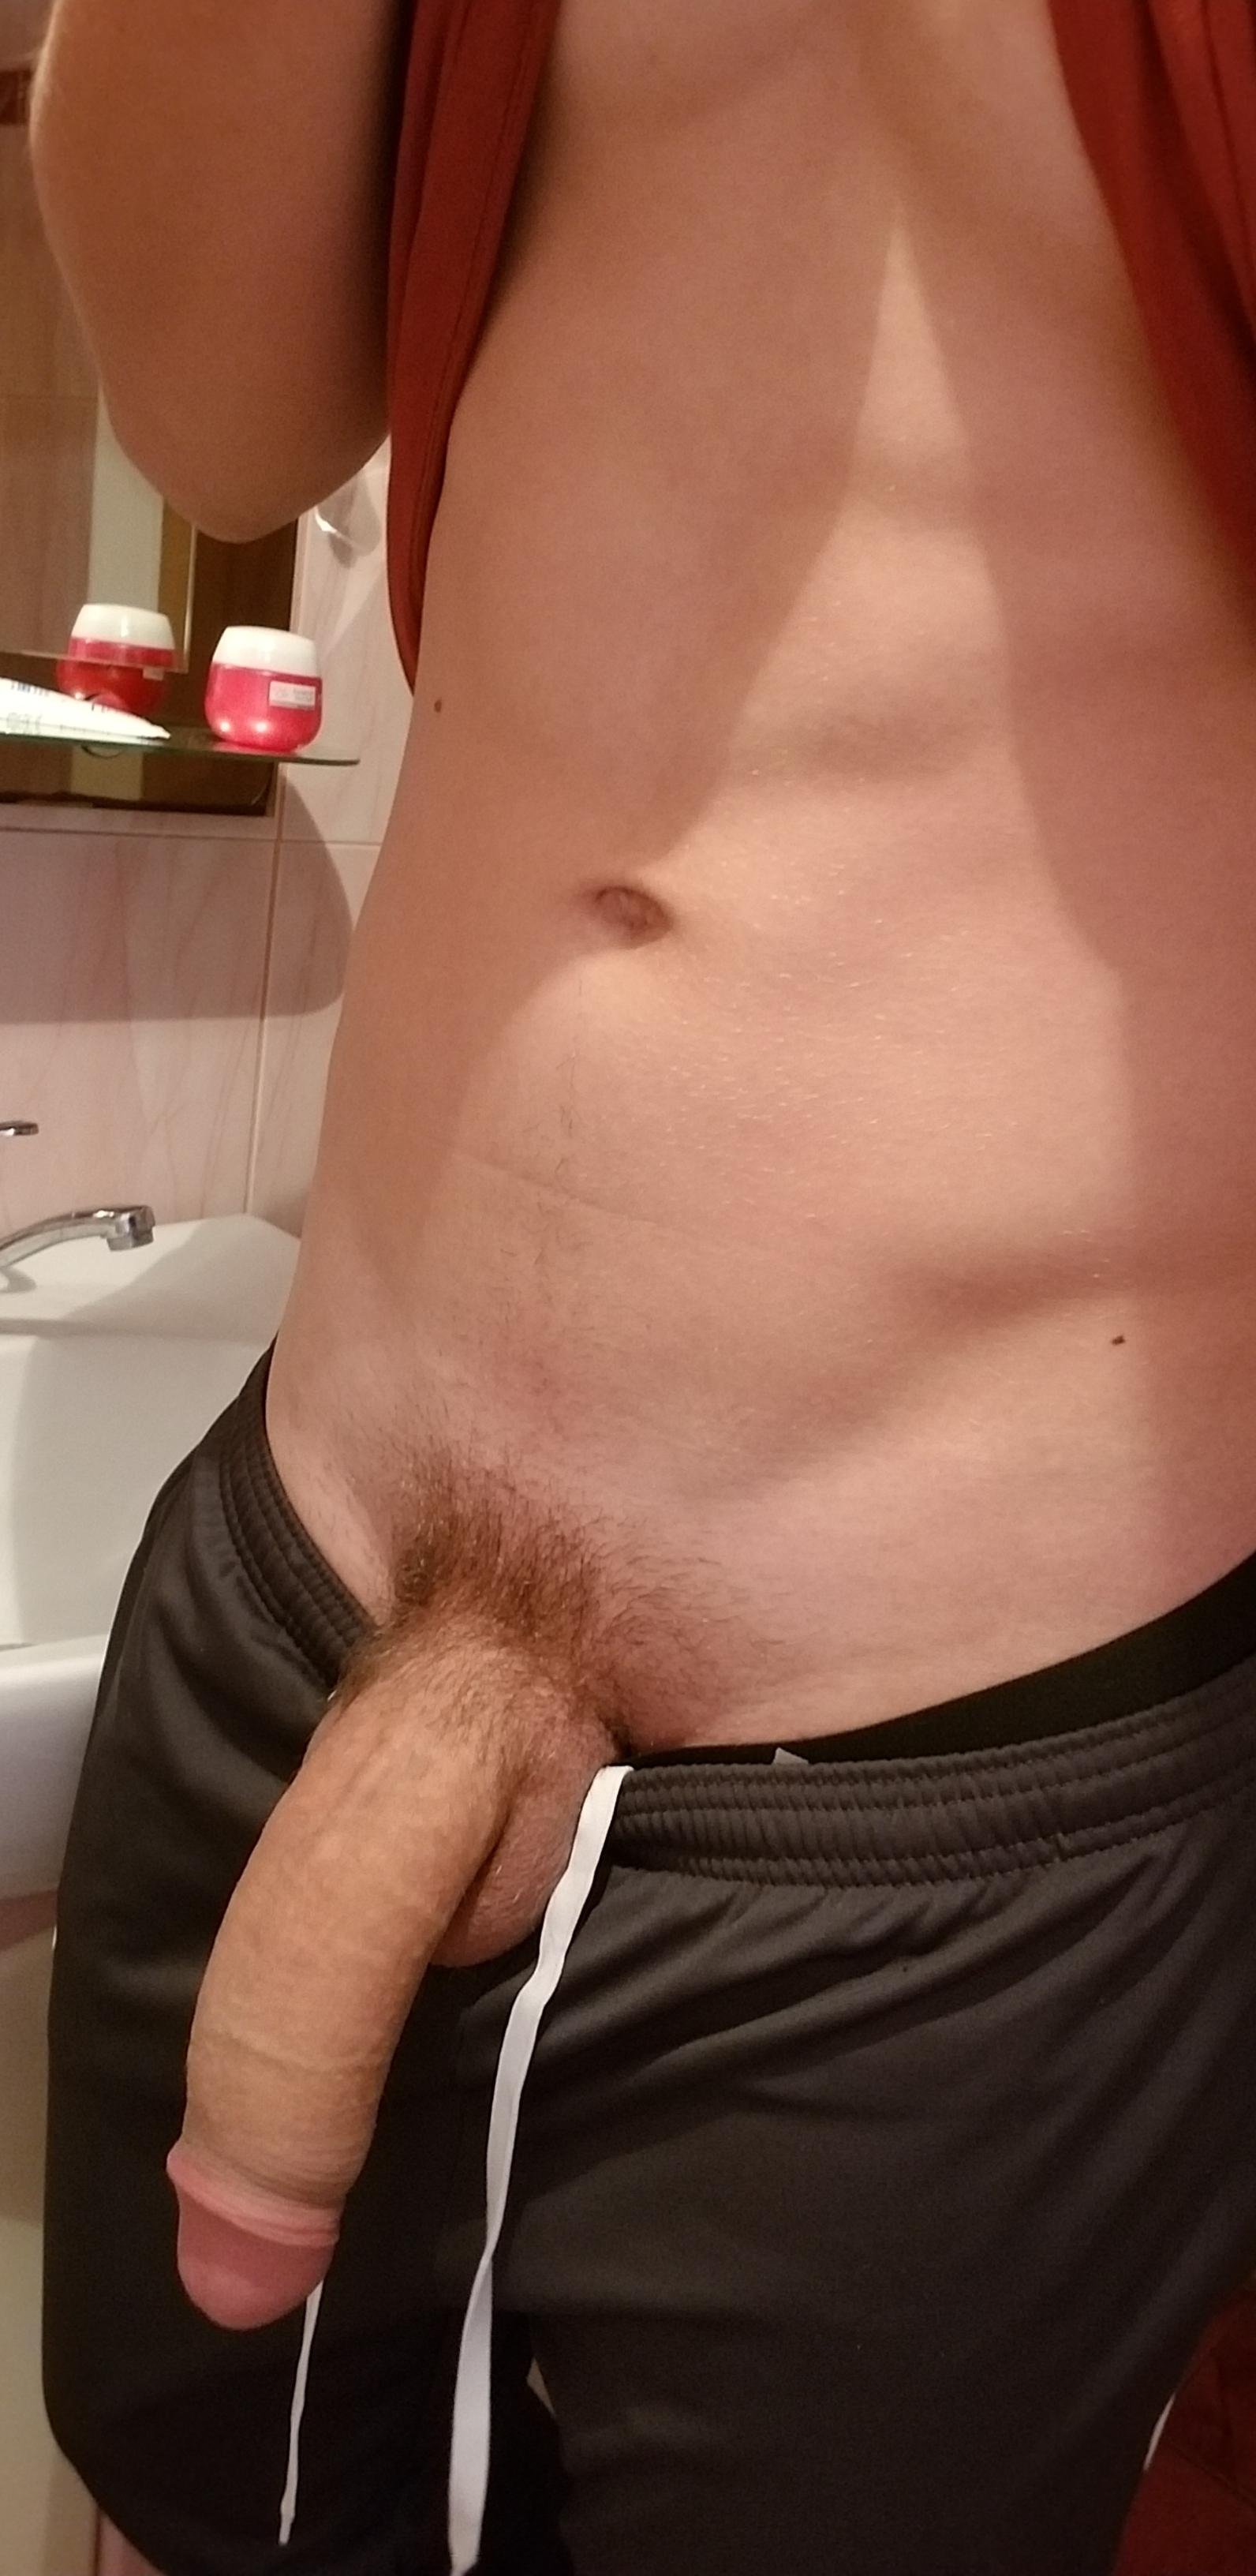 [18 m] I should shave